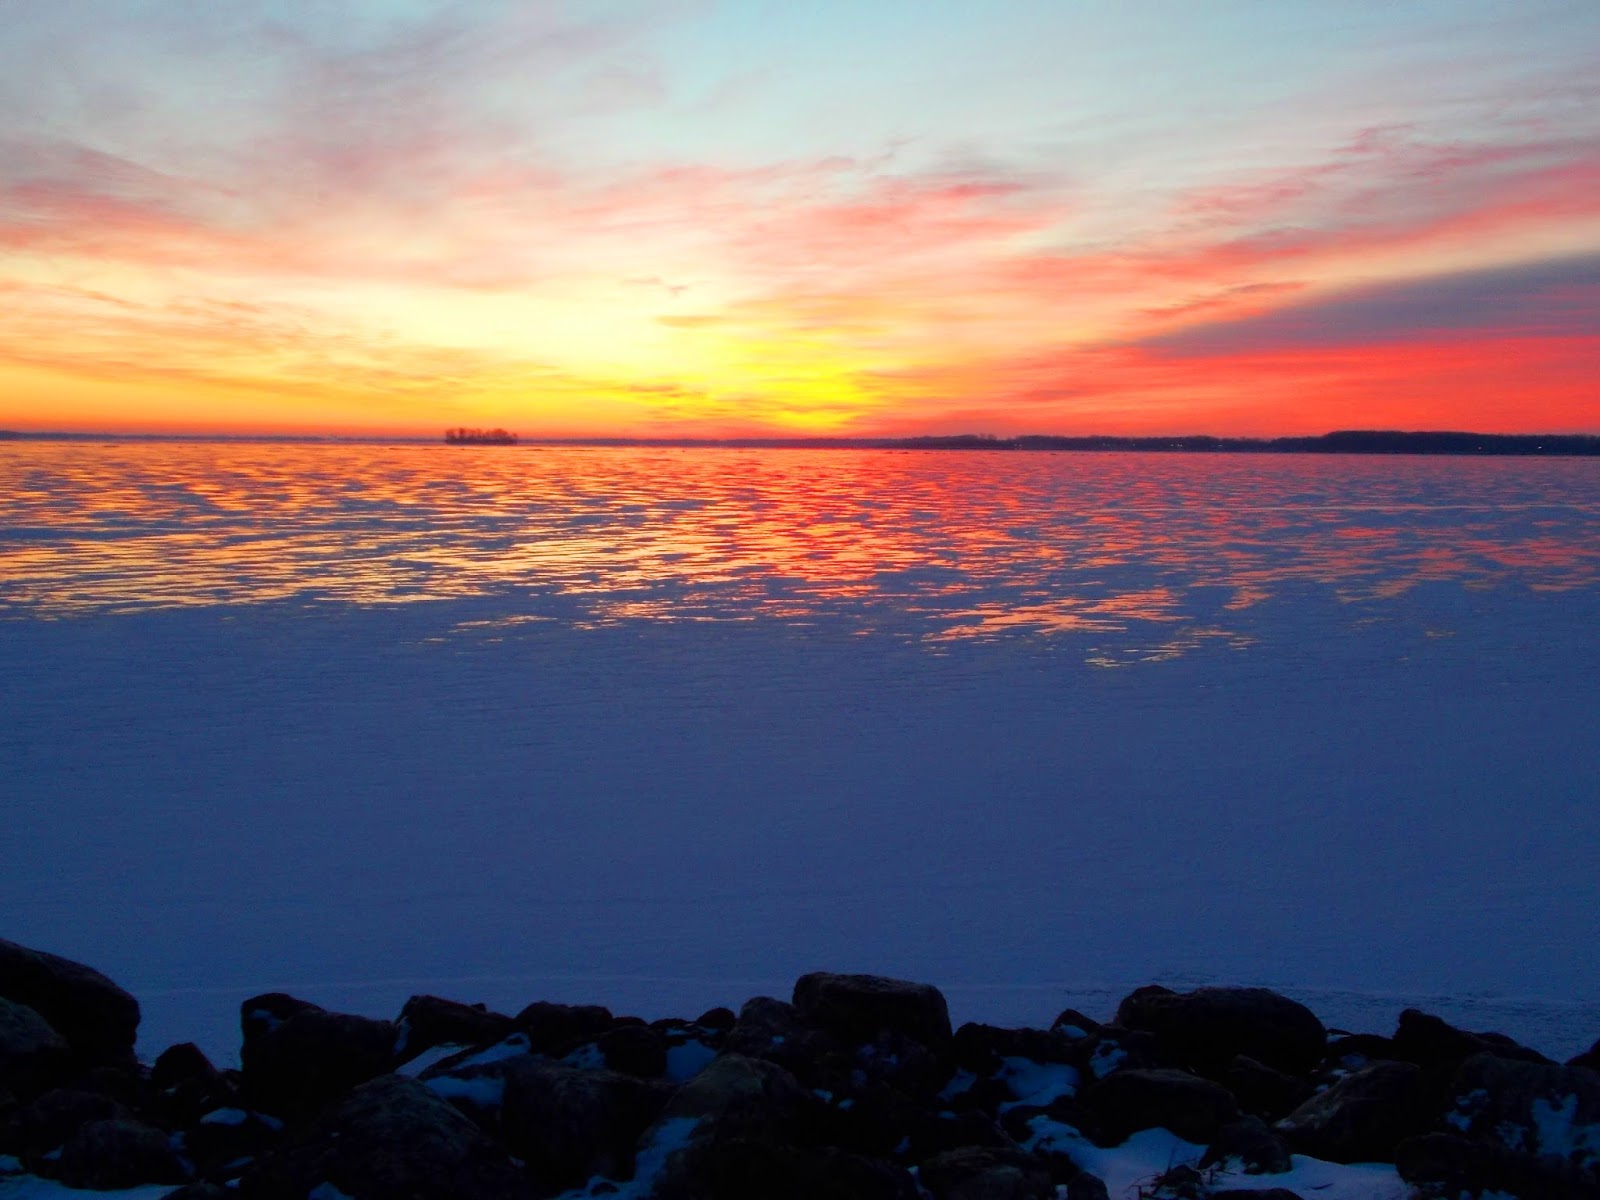 Pat Houseworth Photos: Icy Sunrise on Grand Lake St. Marys {Ohio}